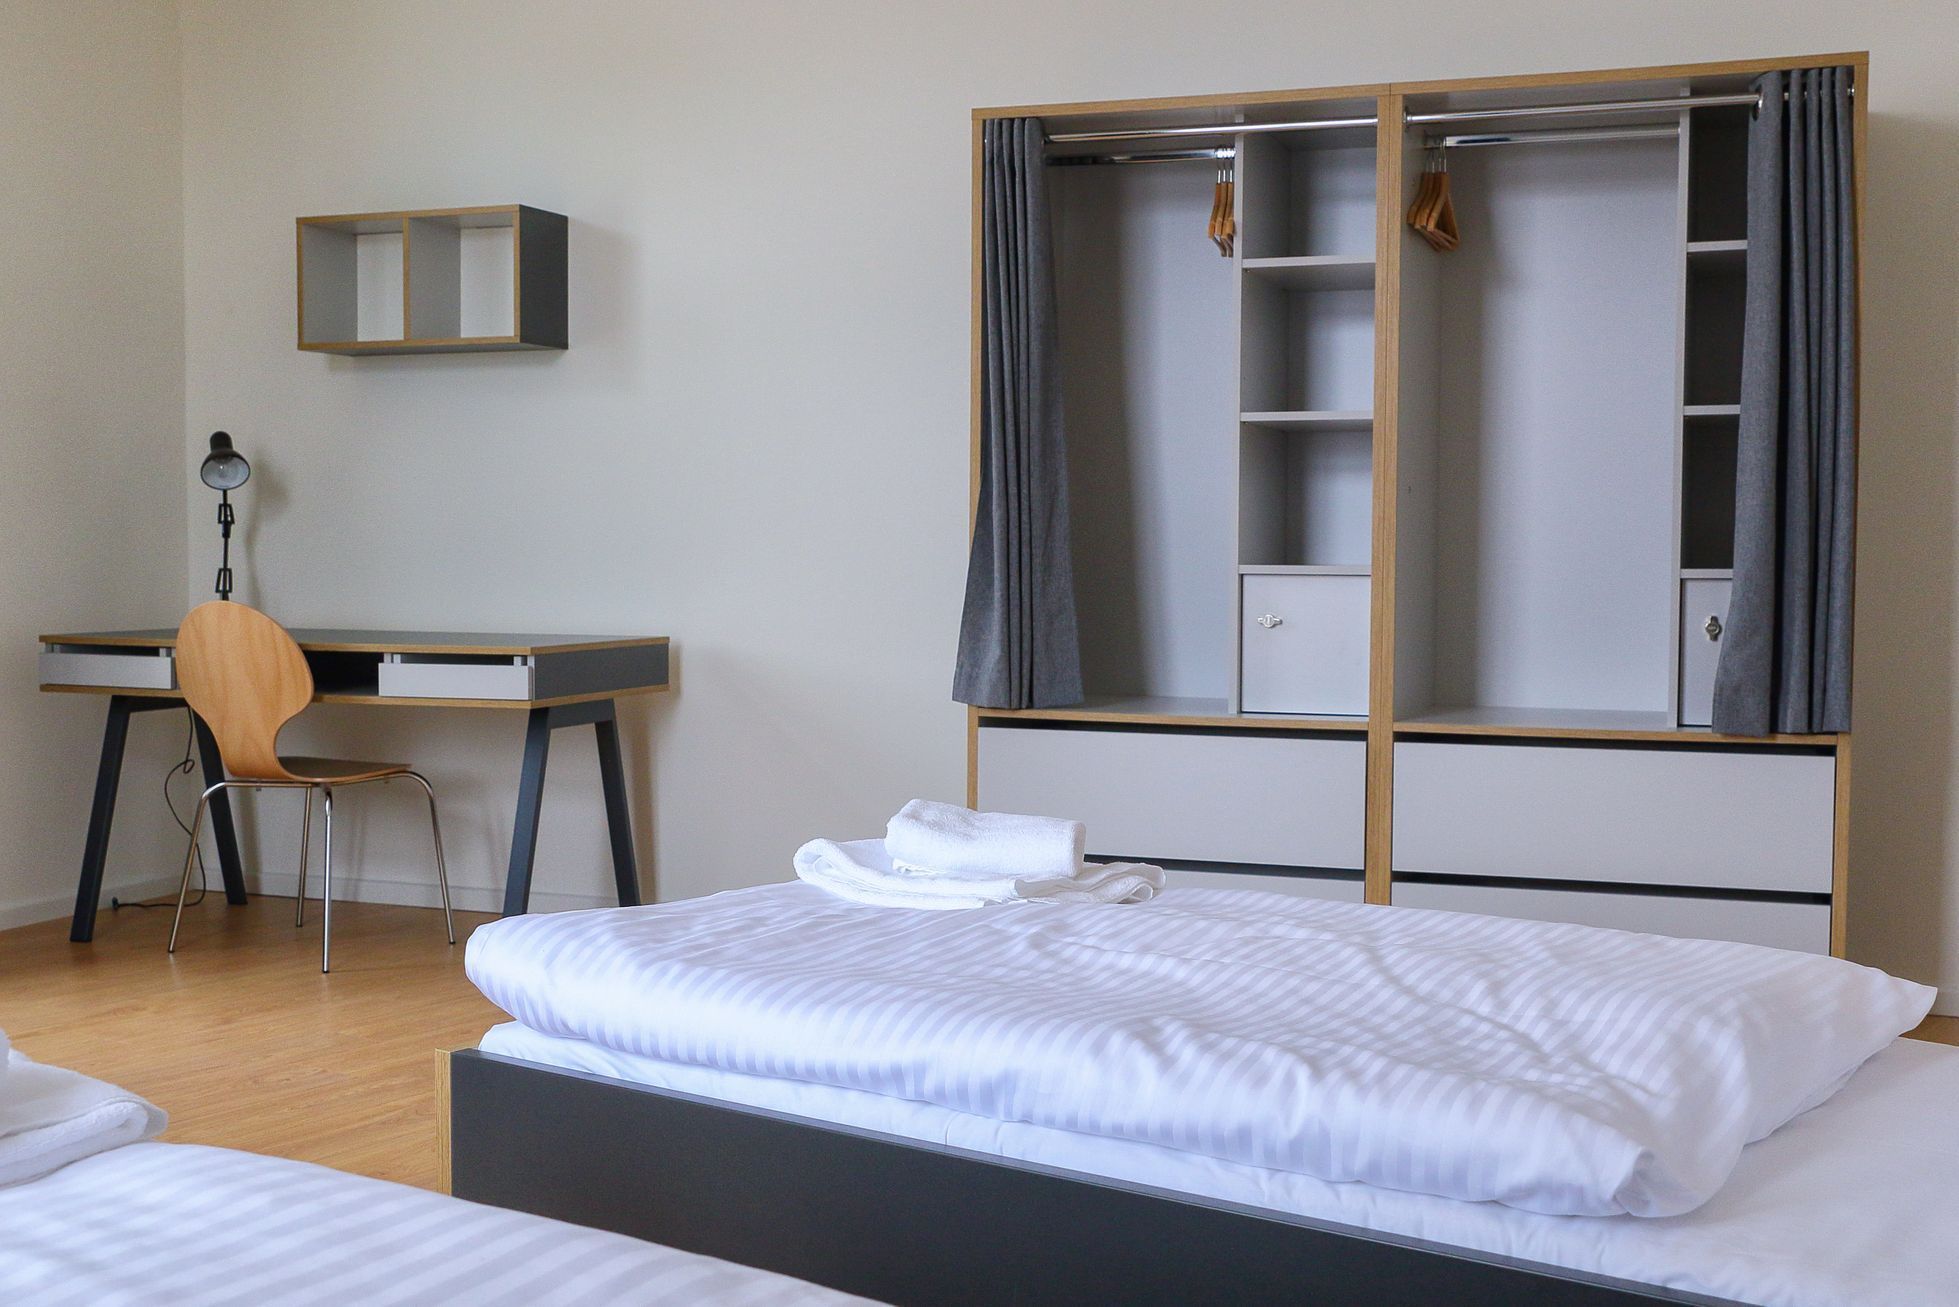 Studentské bydlení Belgická apartments - pokoj